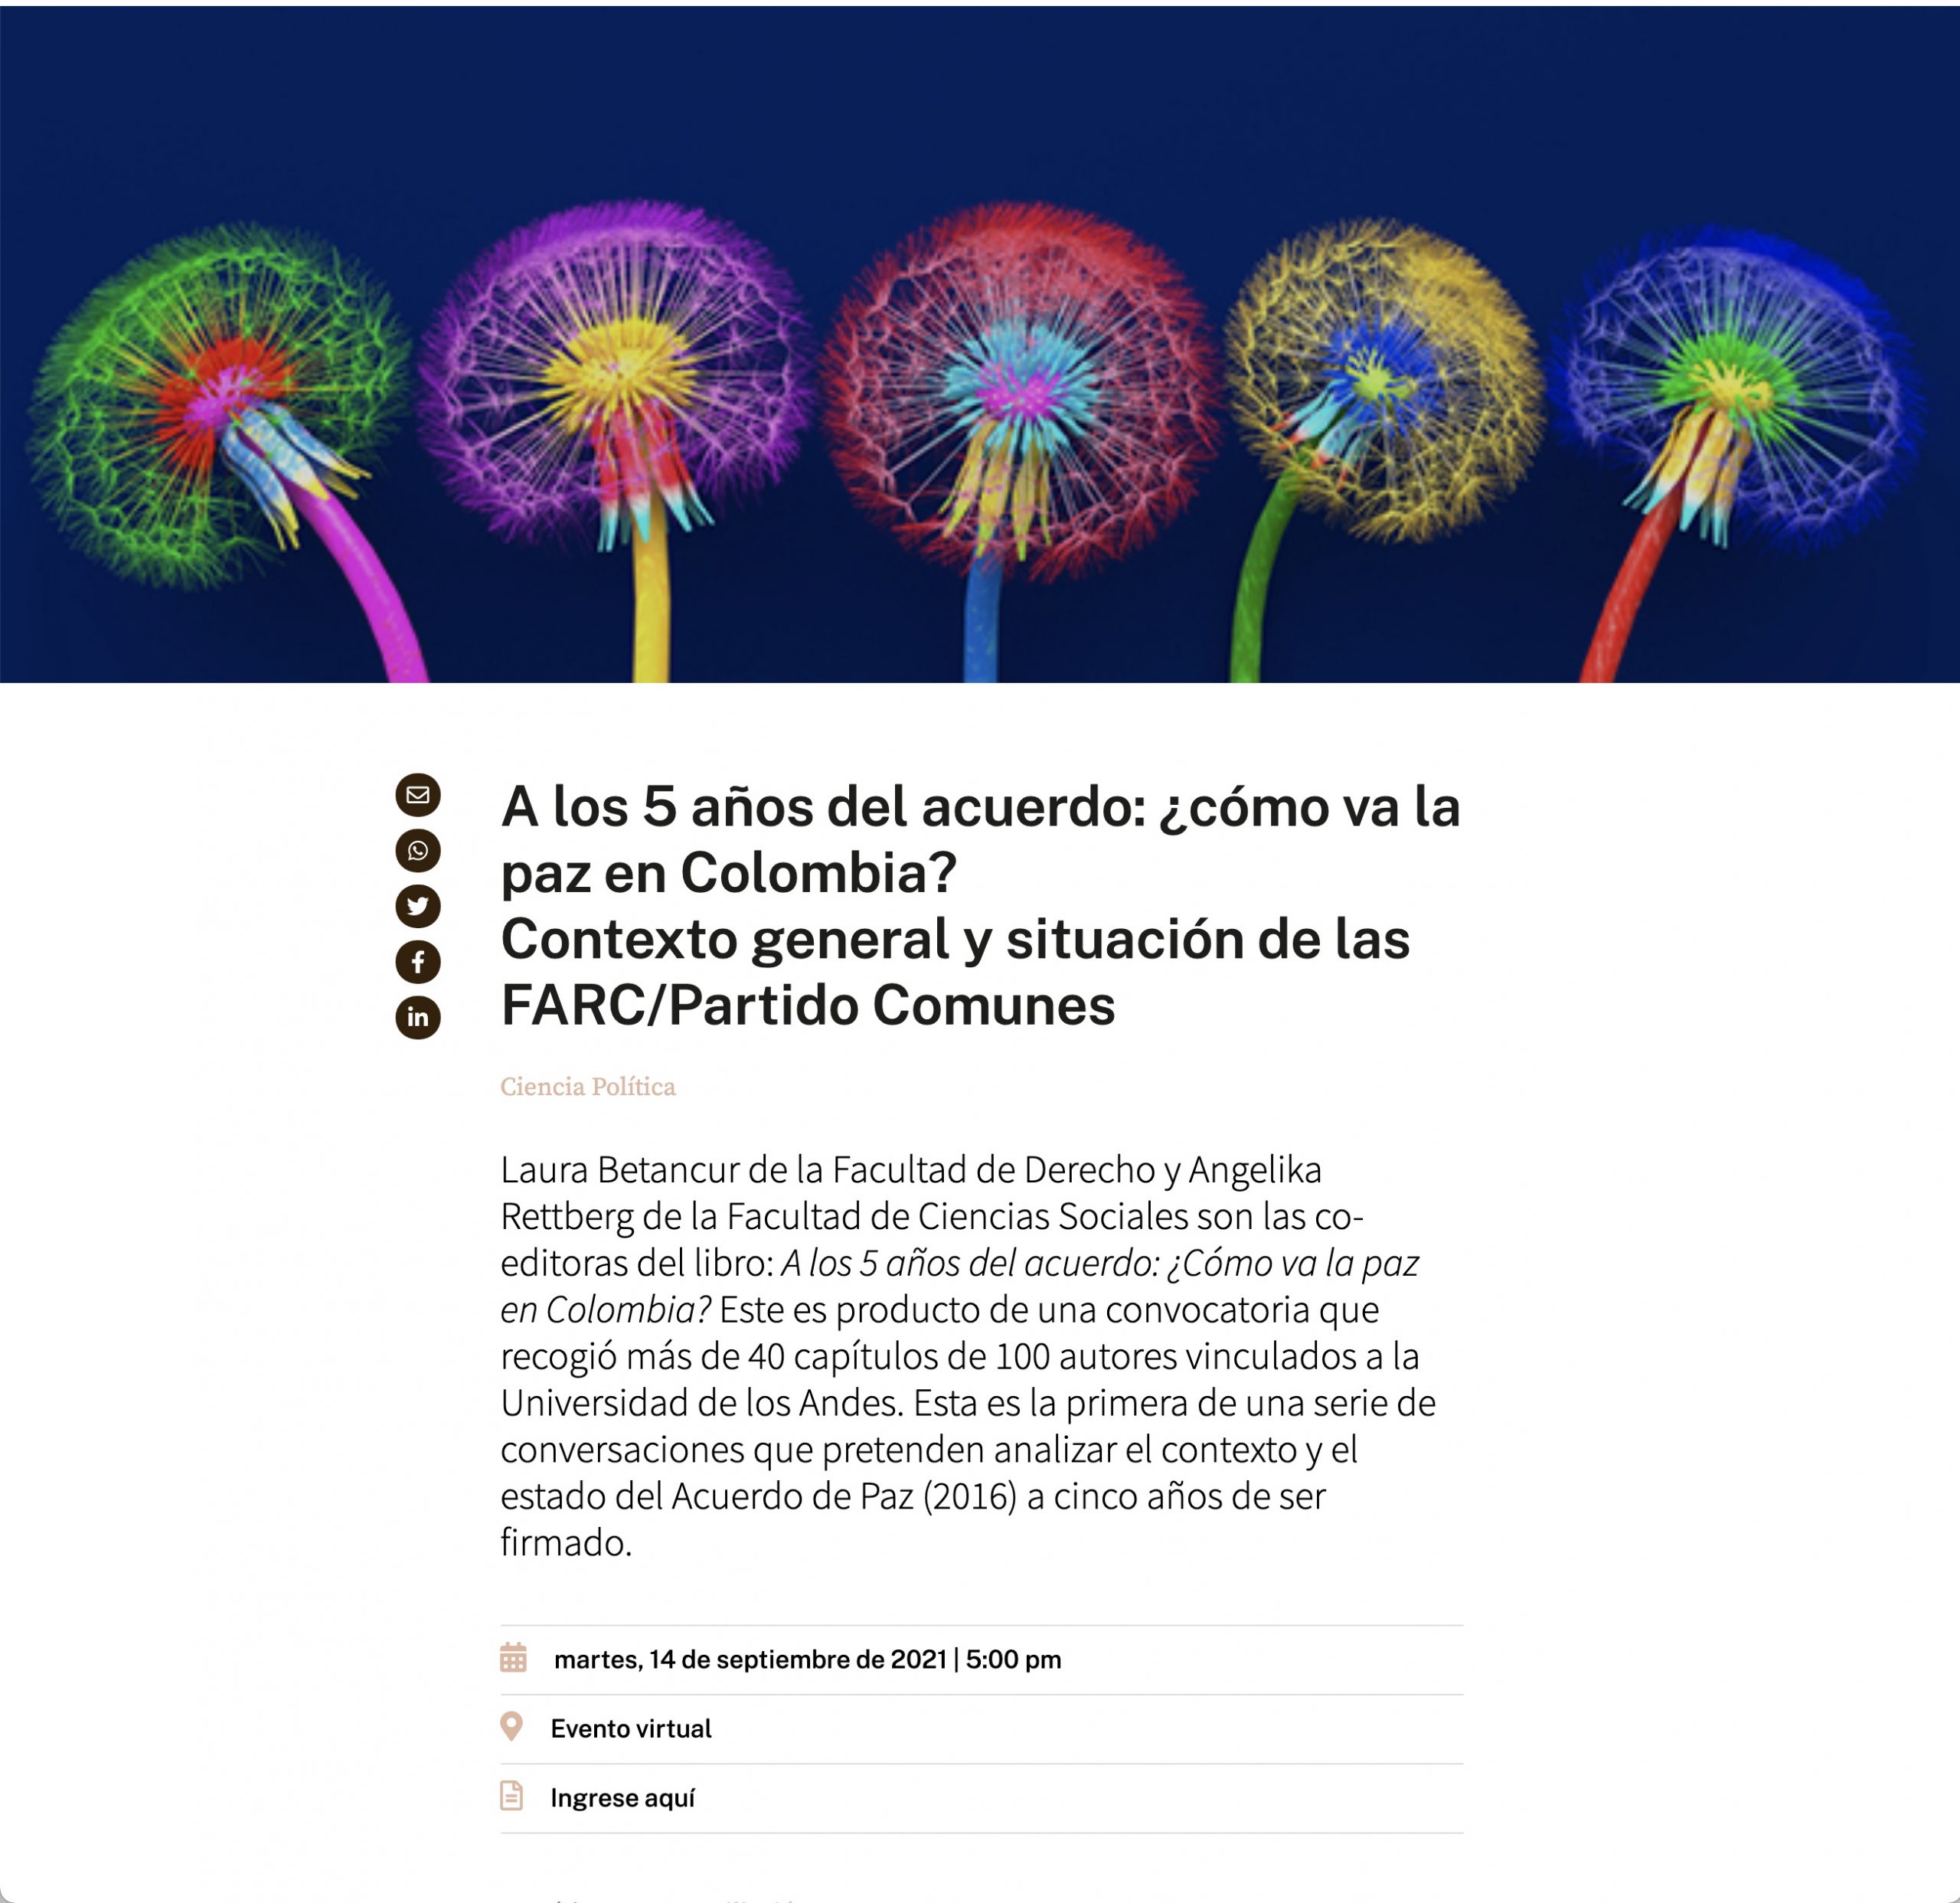 A los 5 años del acuerdo: ¿cómo va la paz en Colombia? Contexto general y situación de las FARC/Partido Comunes